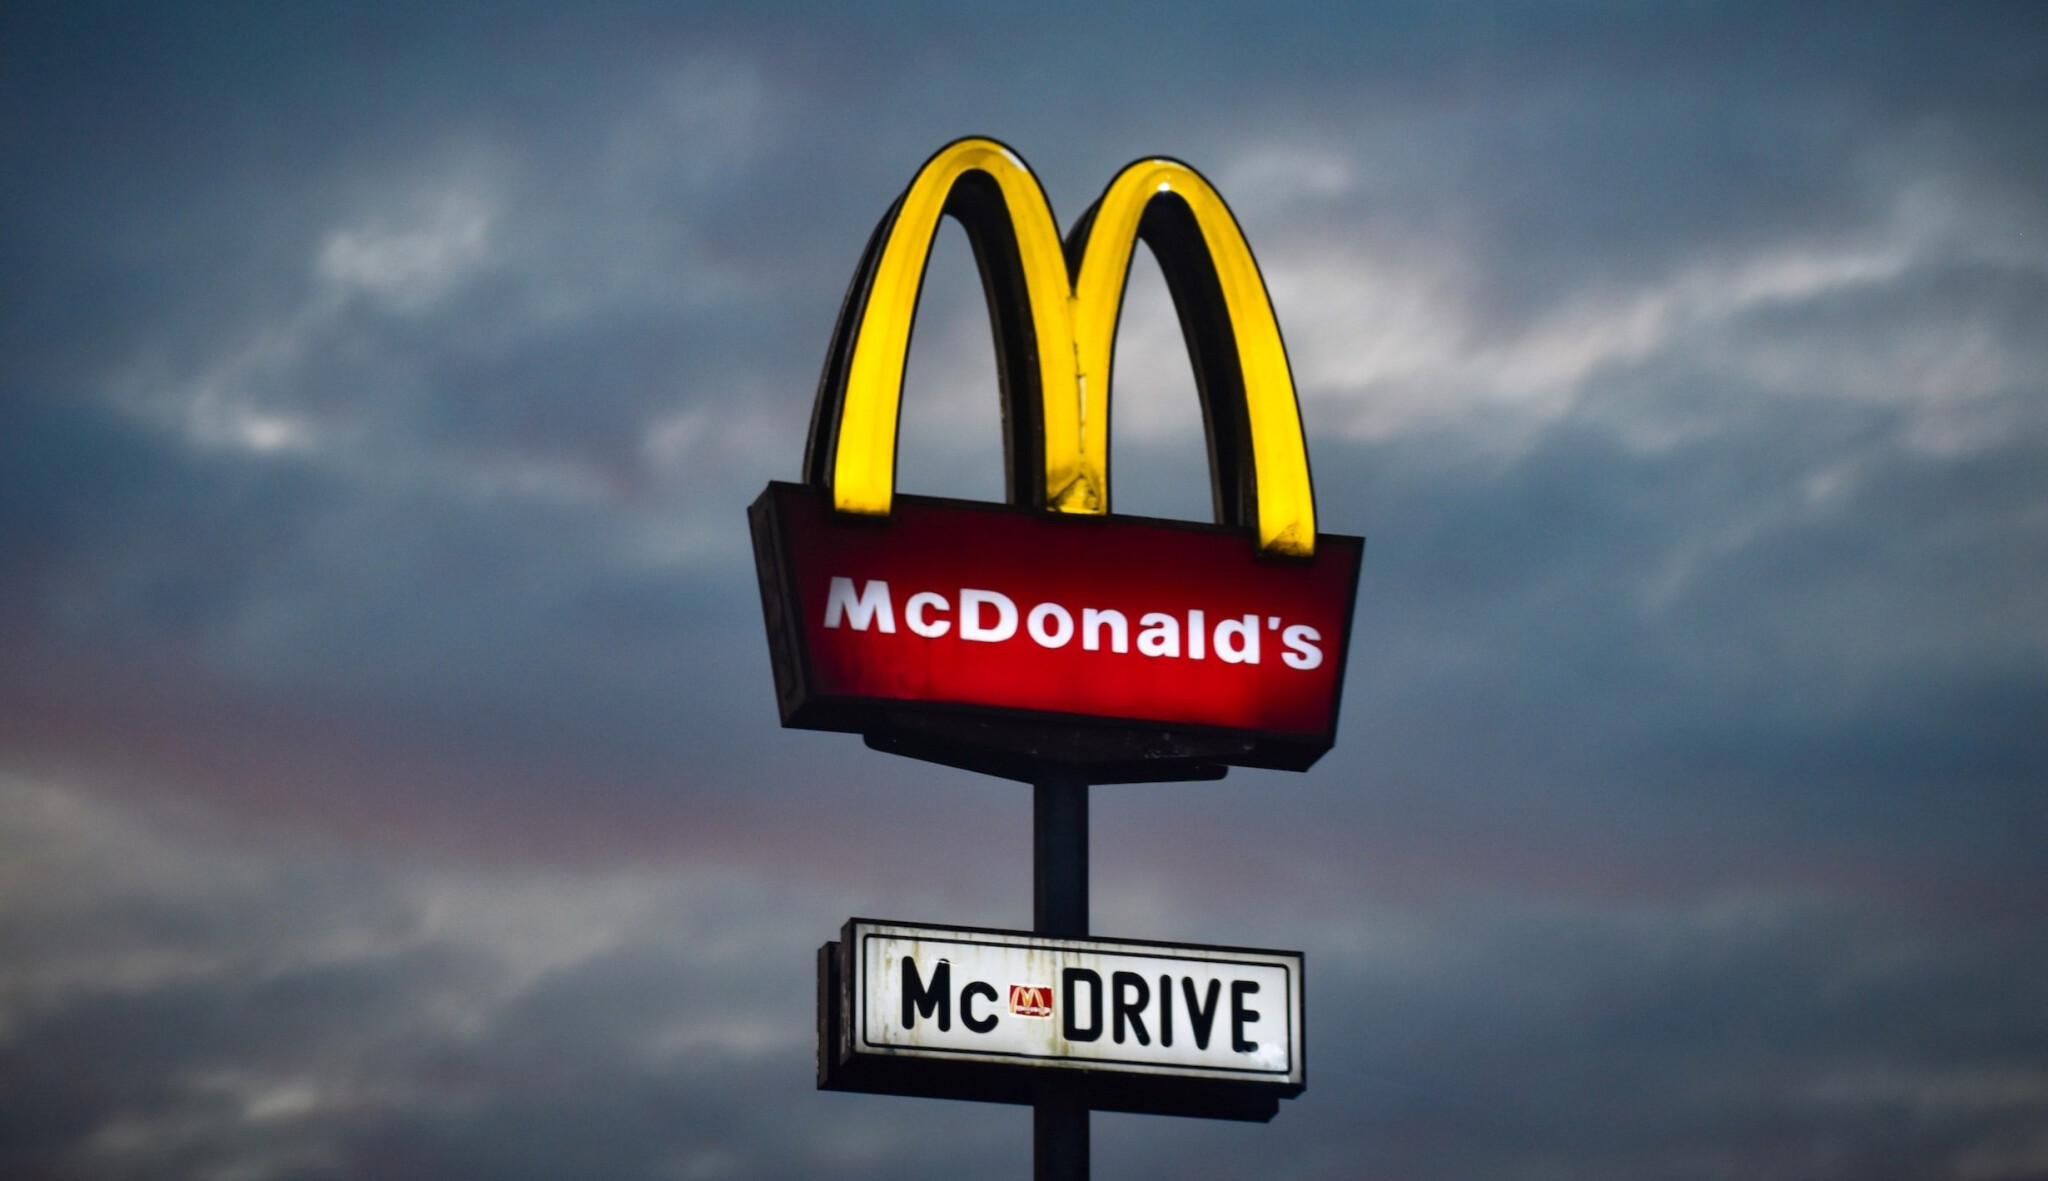 Nadobro pryč z Ruska. Společnost McDonald’s odchází po třiceti letech